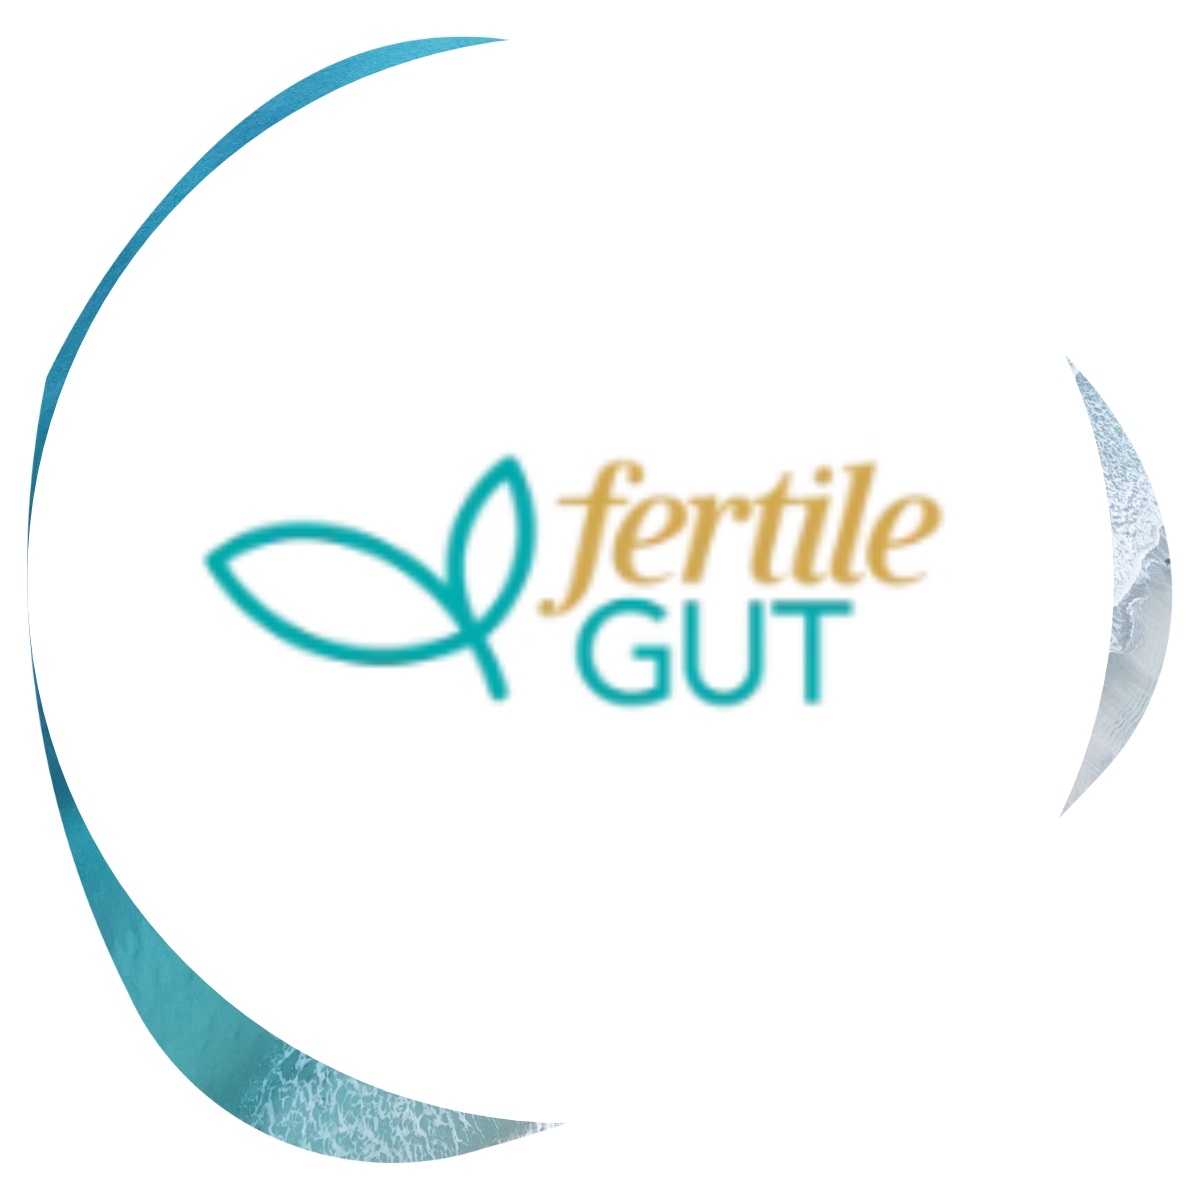 Fertile Gut featured